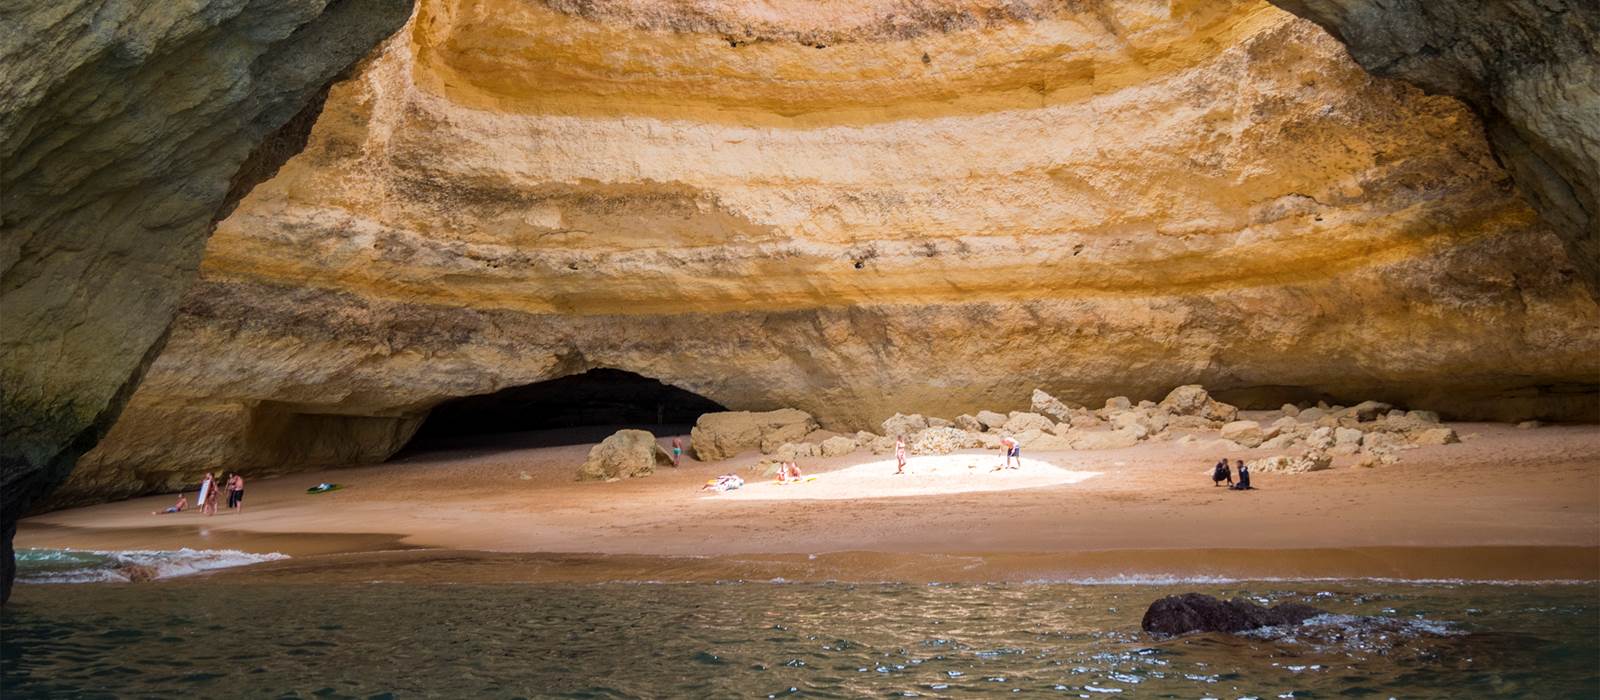 Benagil Cave in the Algarve